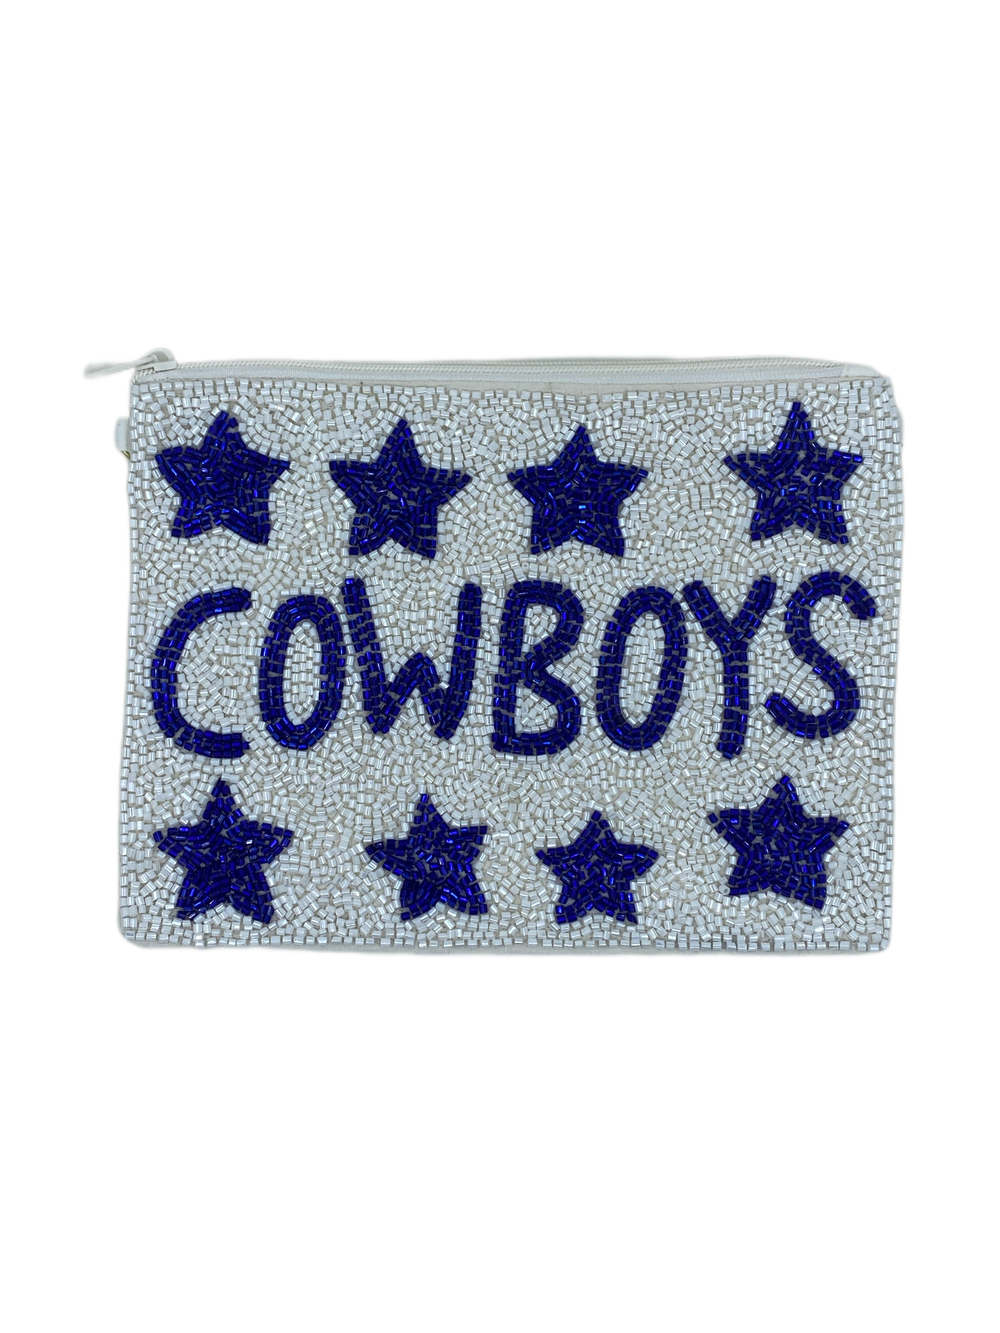 Cowboys Pouch